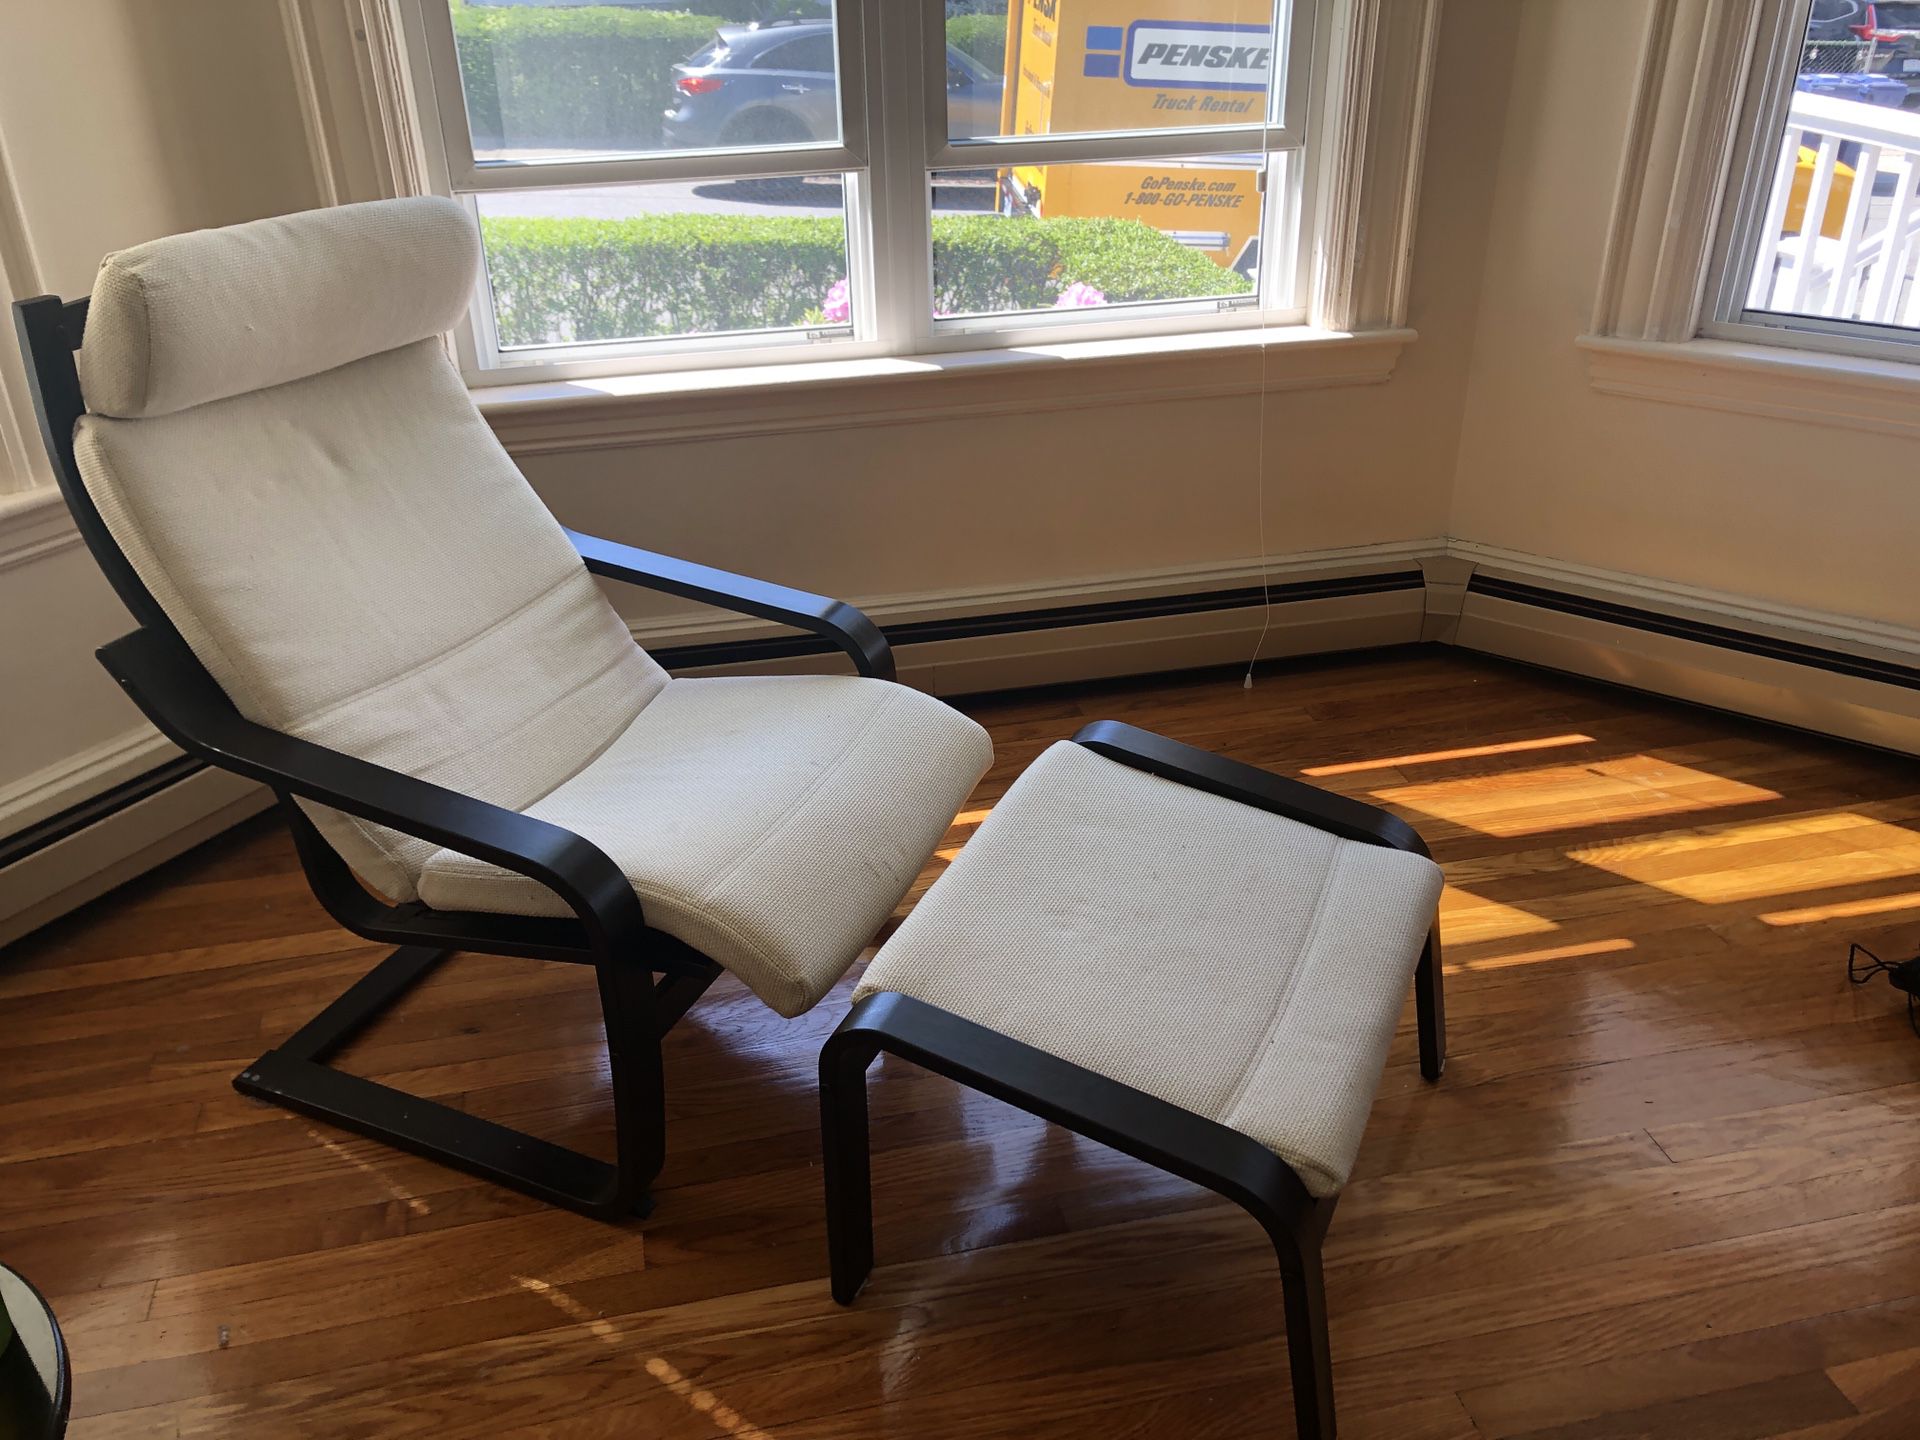 White lounge chair